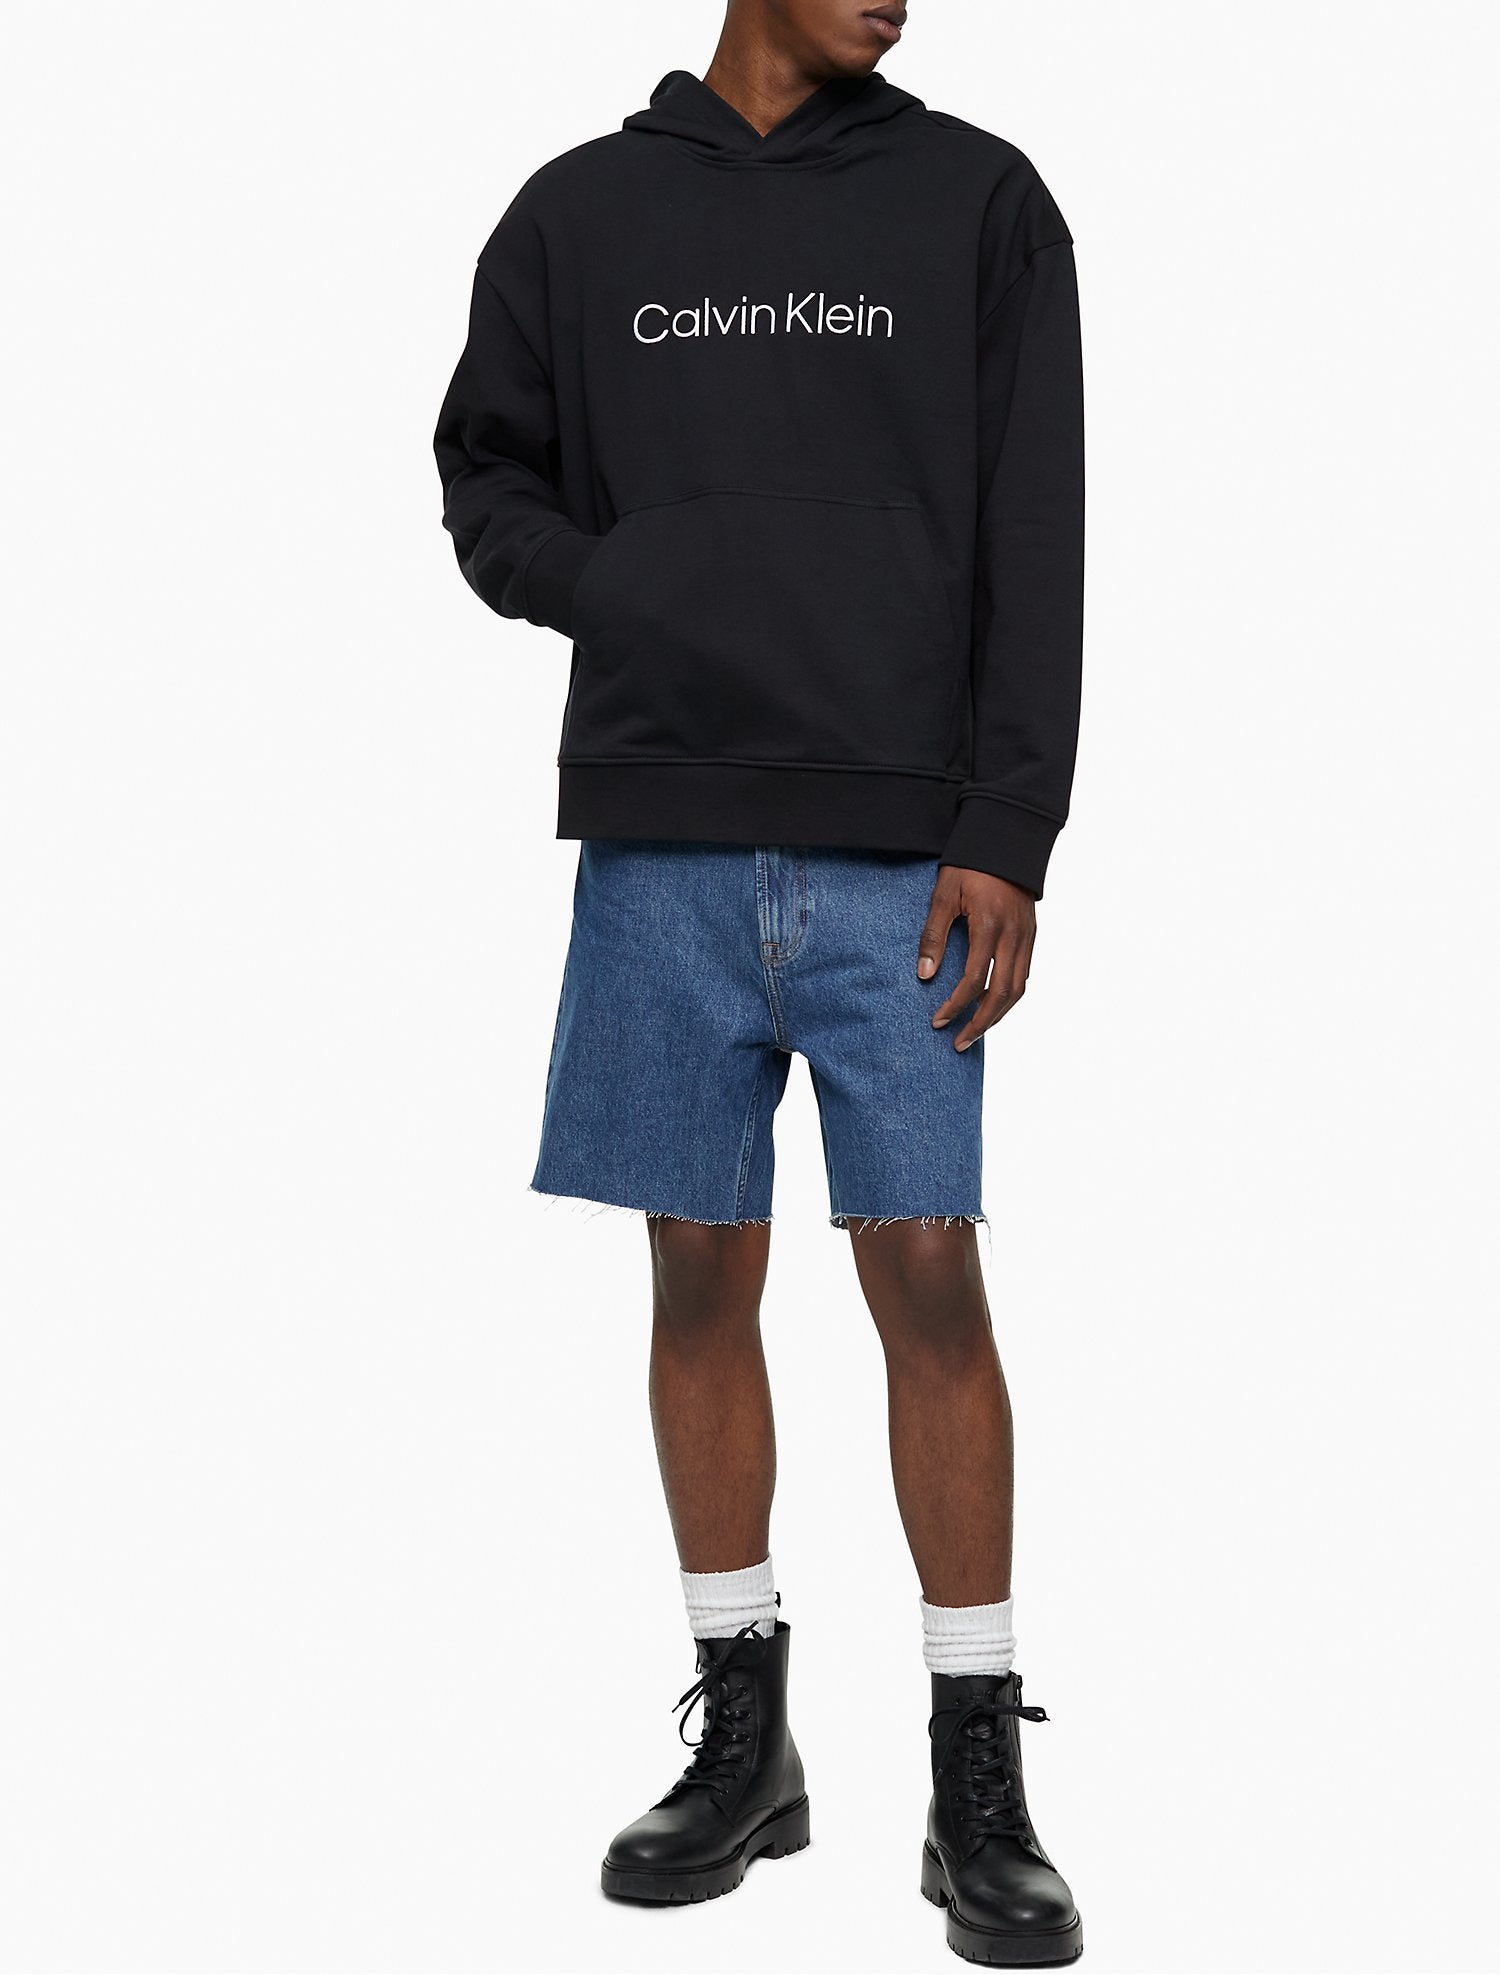 Calvin Klein Classic Fit Stone Indigo Jean Shorts - Men